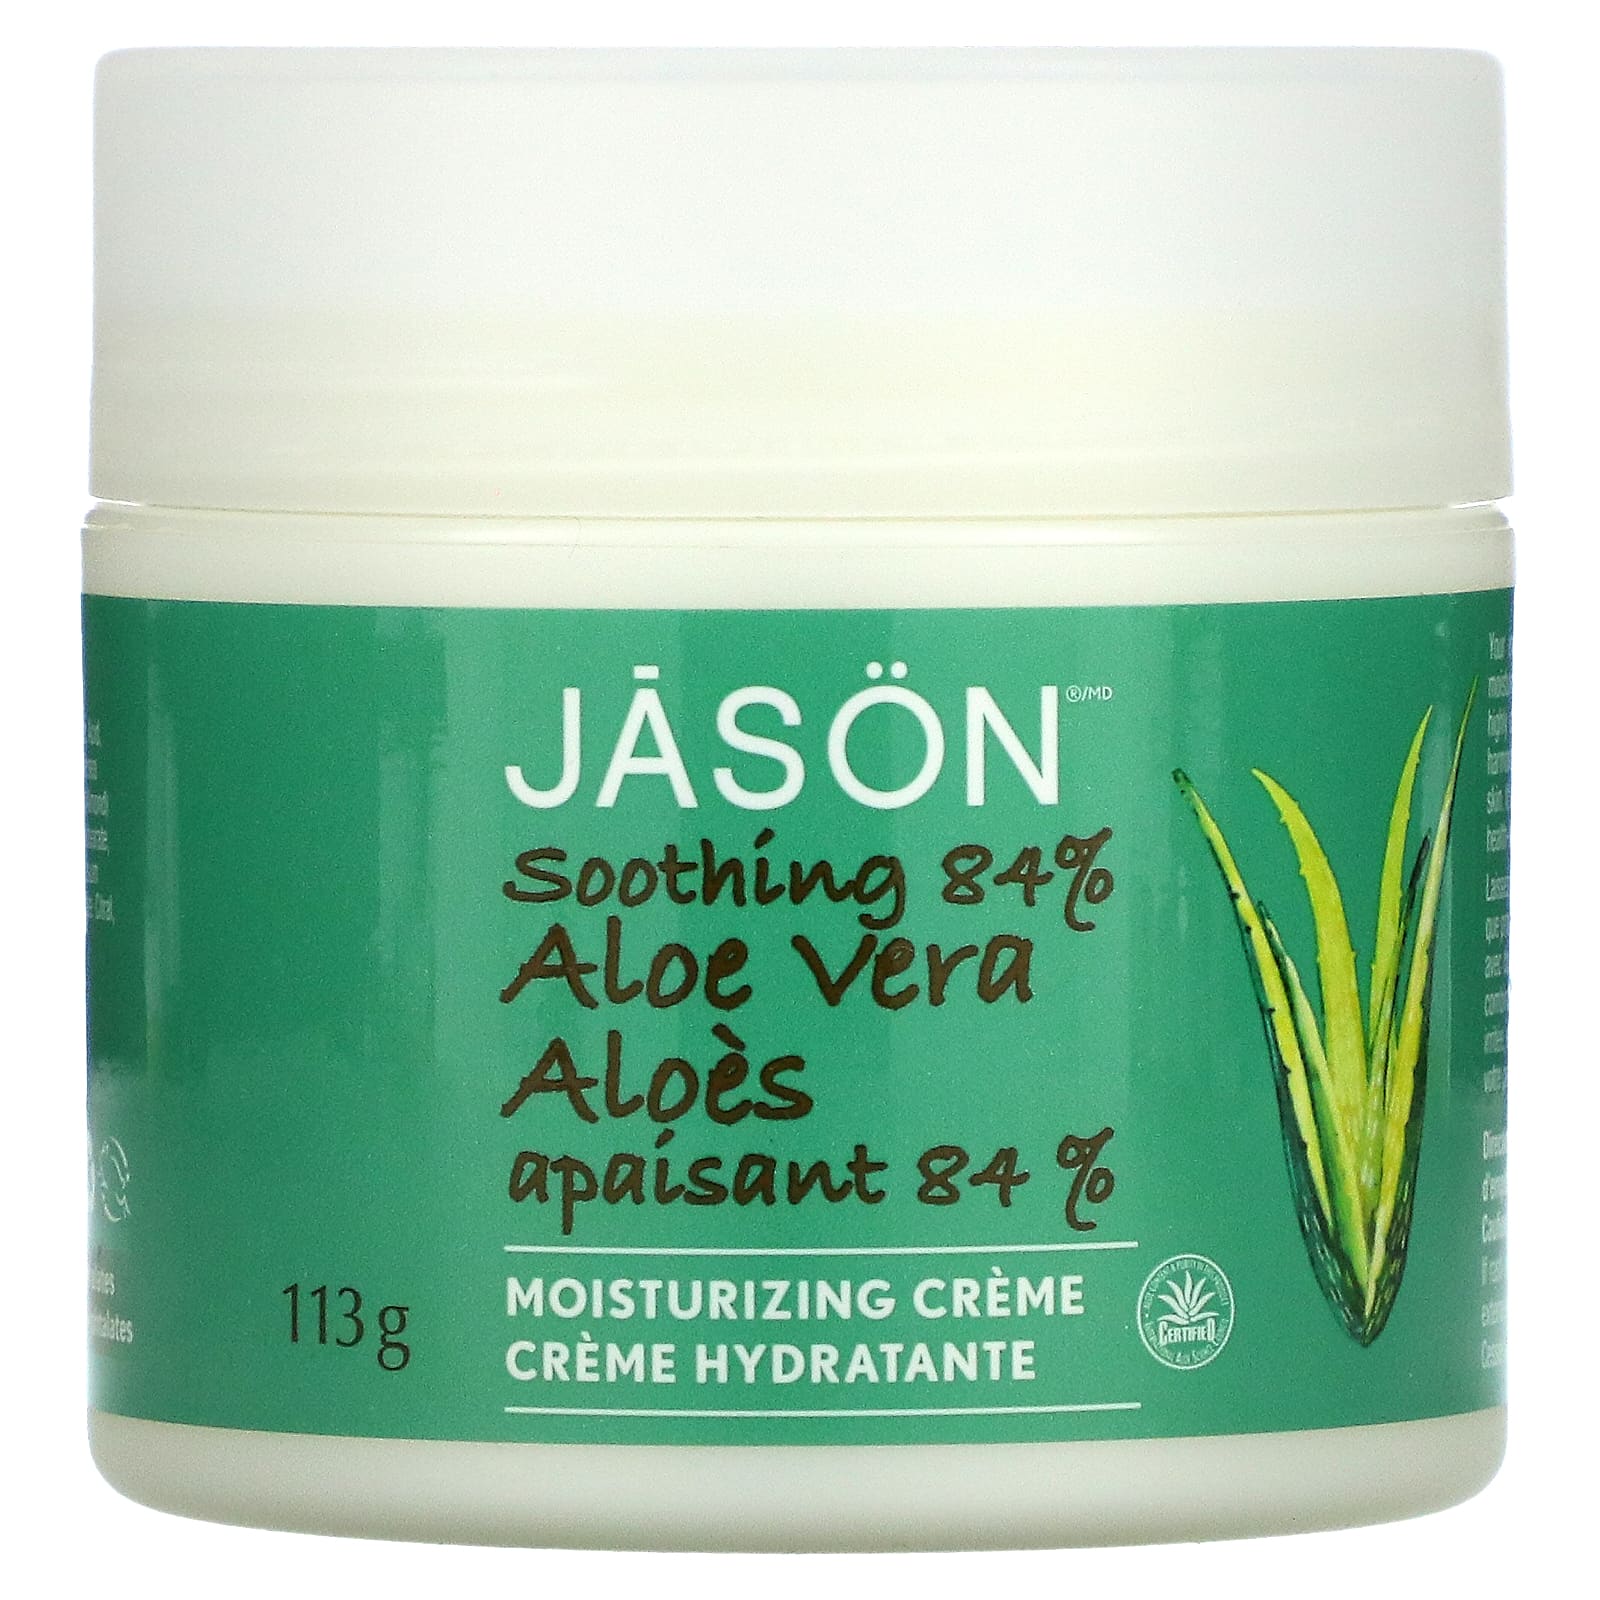 Jason Natural Aloe Vera 84% Moisturizing Creme Soothing 4 oz (113 g) расположение от jason ladanye magic